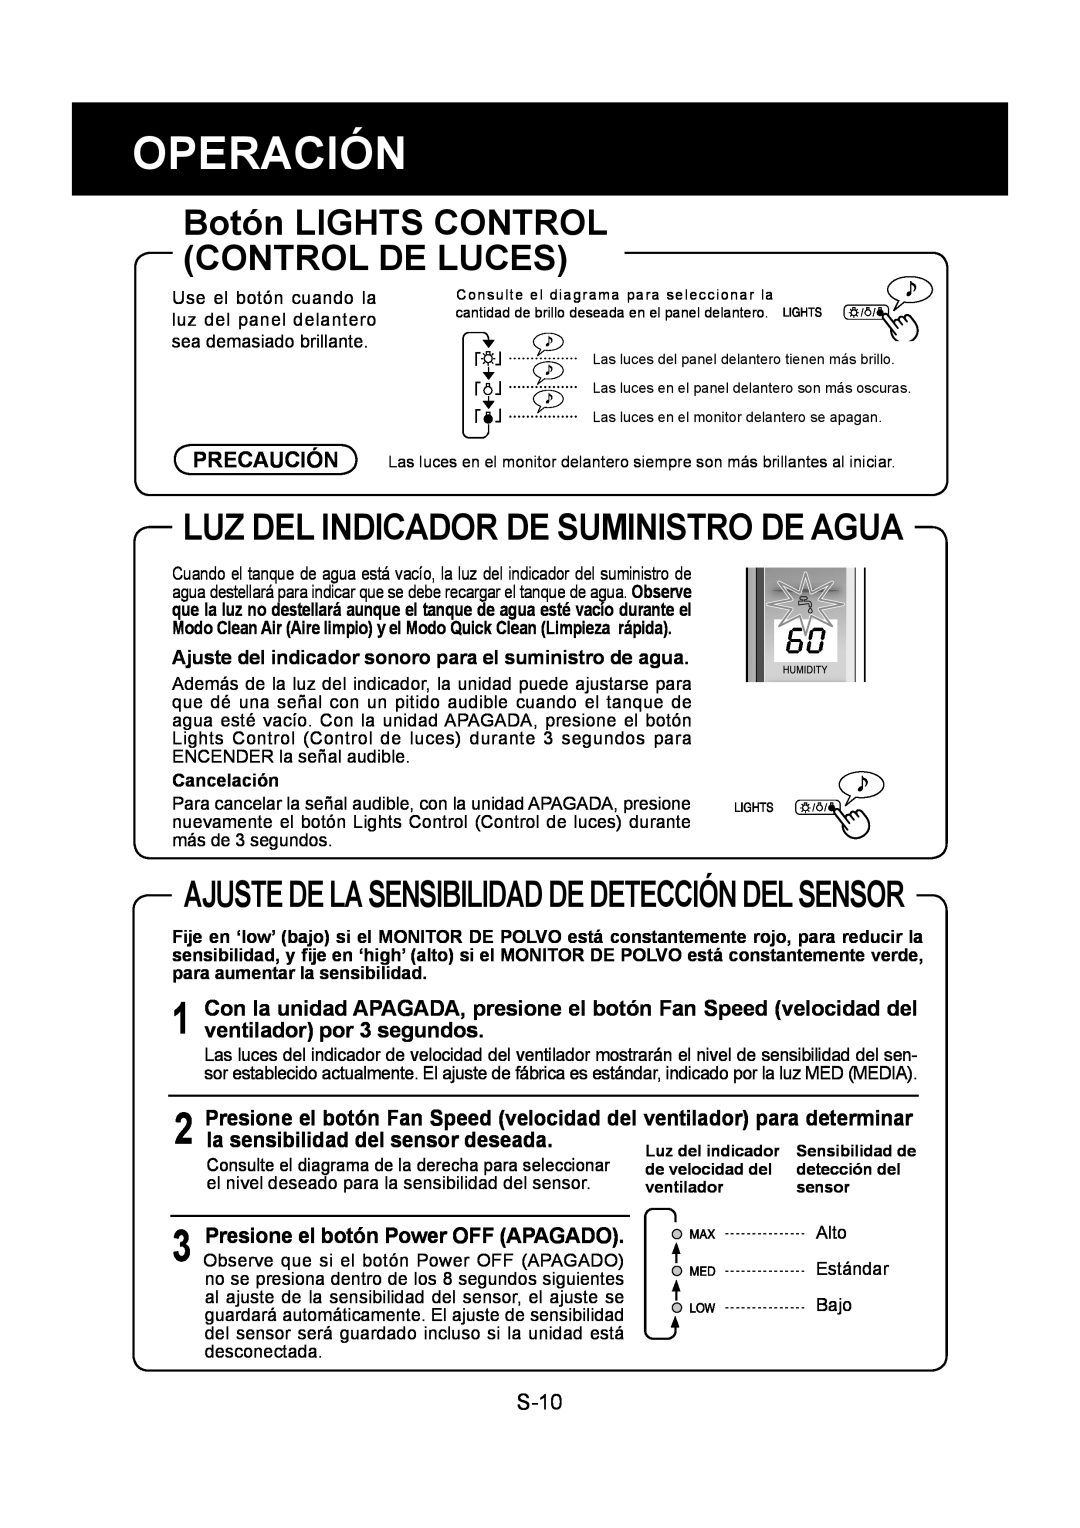 Sharp KC-860U operation manual Operación, Botón LIGHTS CONTROL CONTROL DE LUCES, Luz Del Indicador De Suministro De Agua 